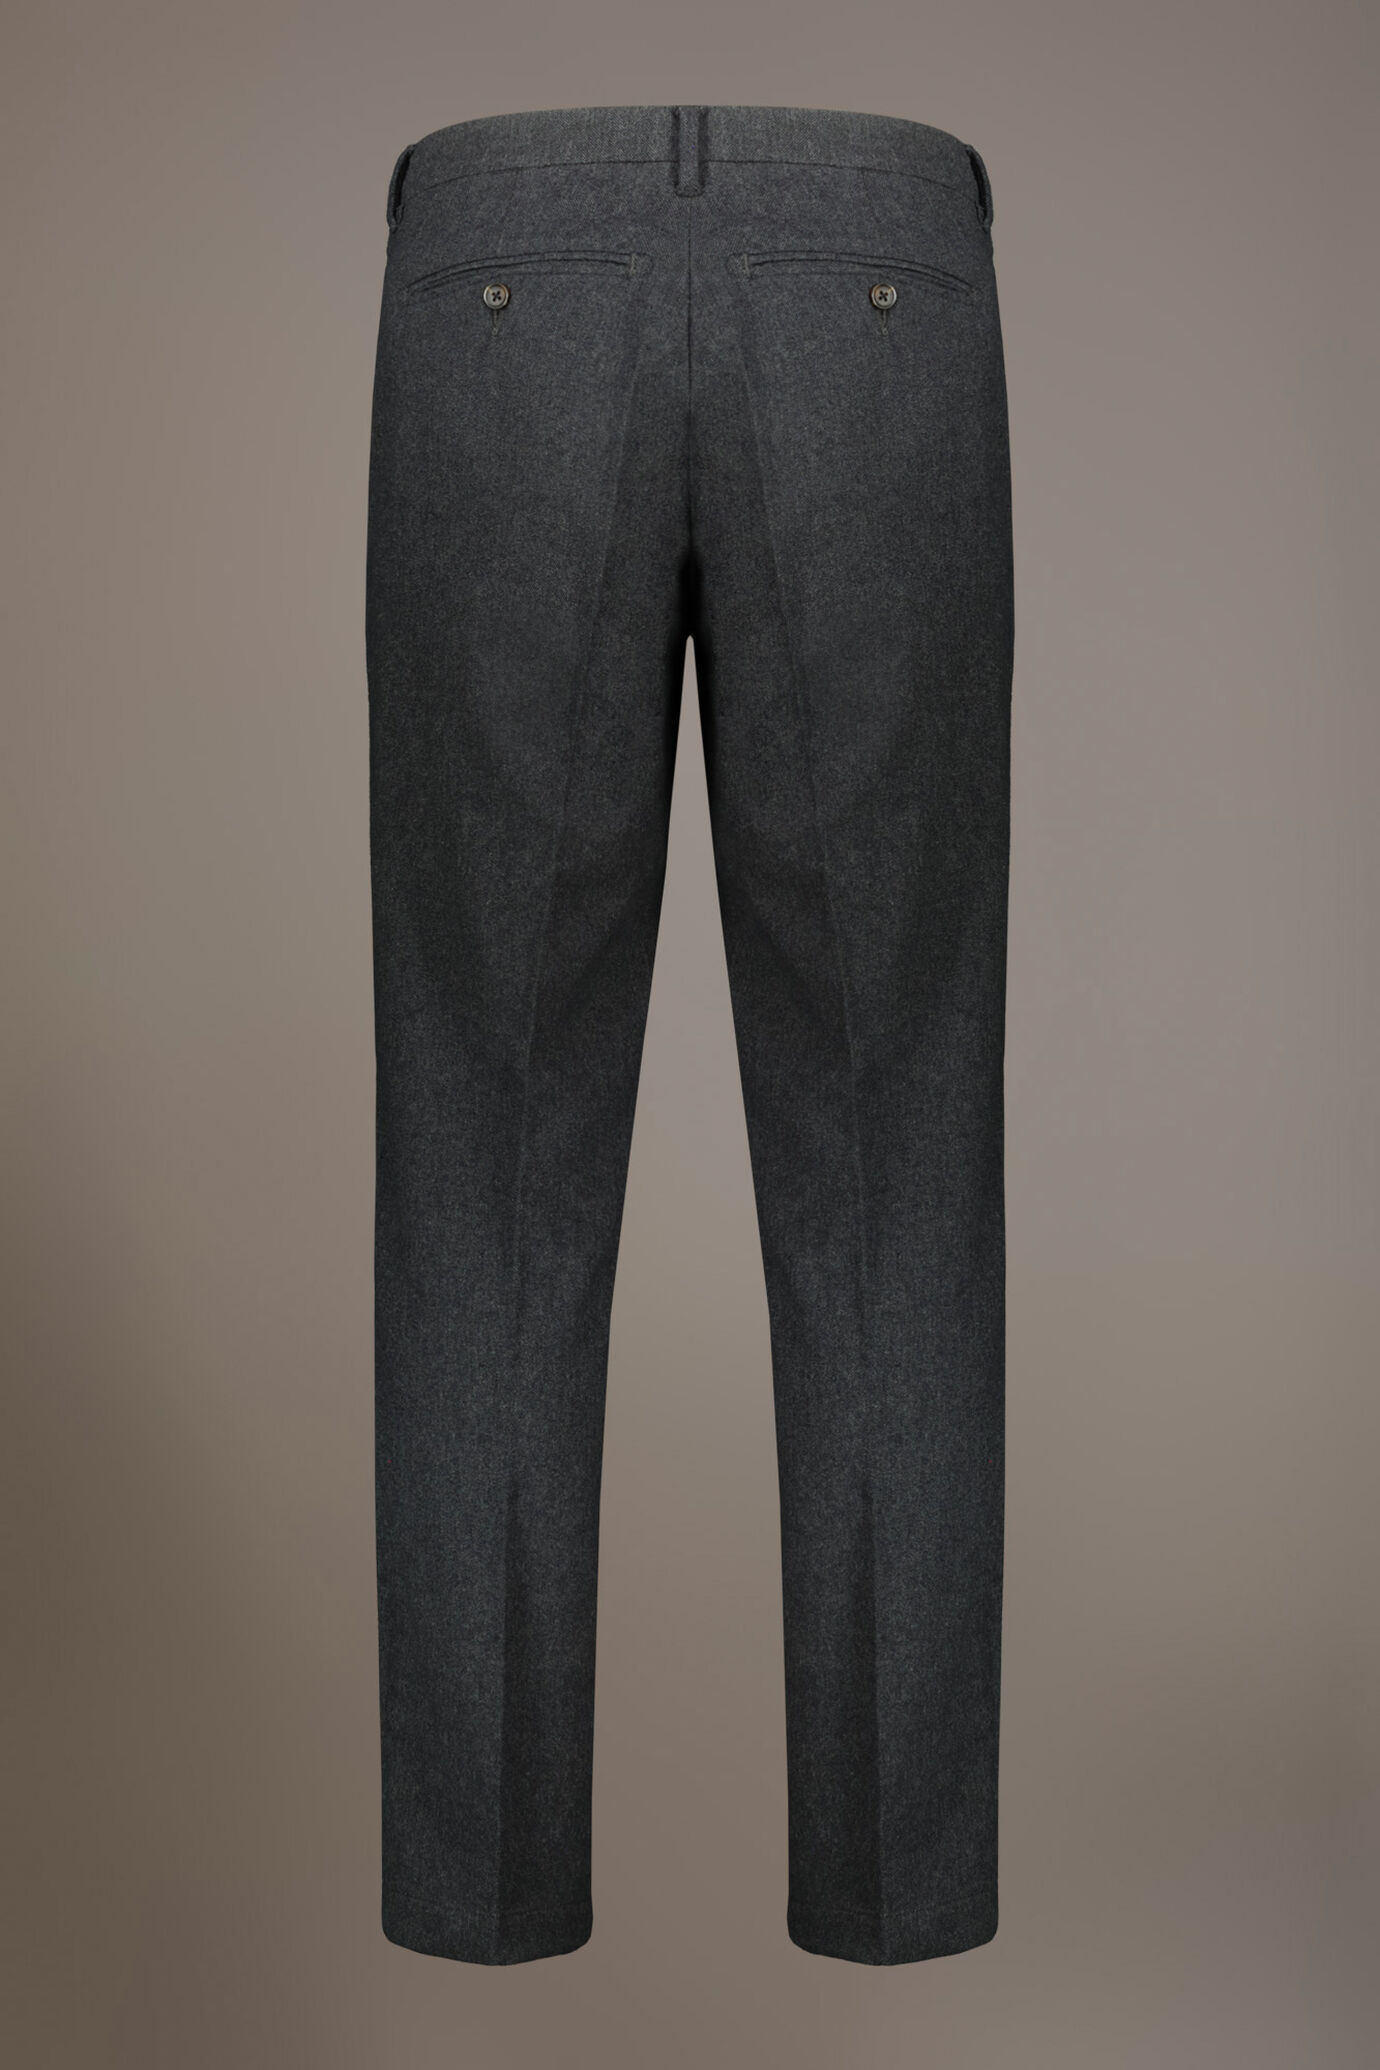 Pantalone chino regular fit tessuto tinto filo melange twill image number 6